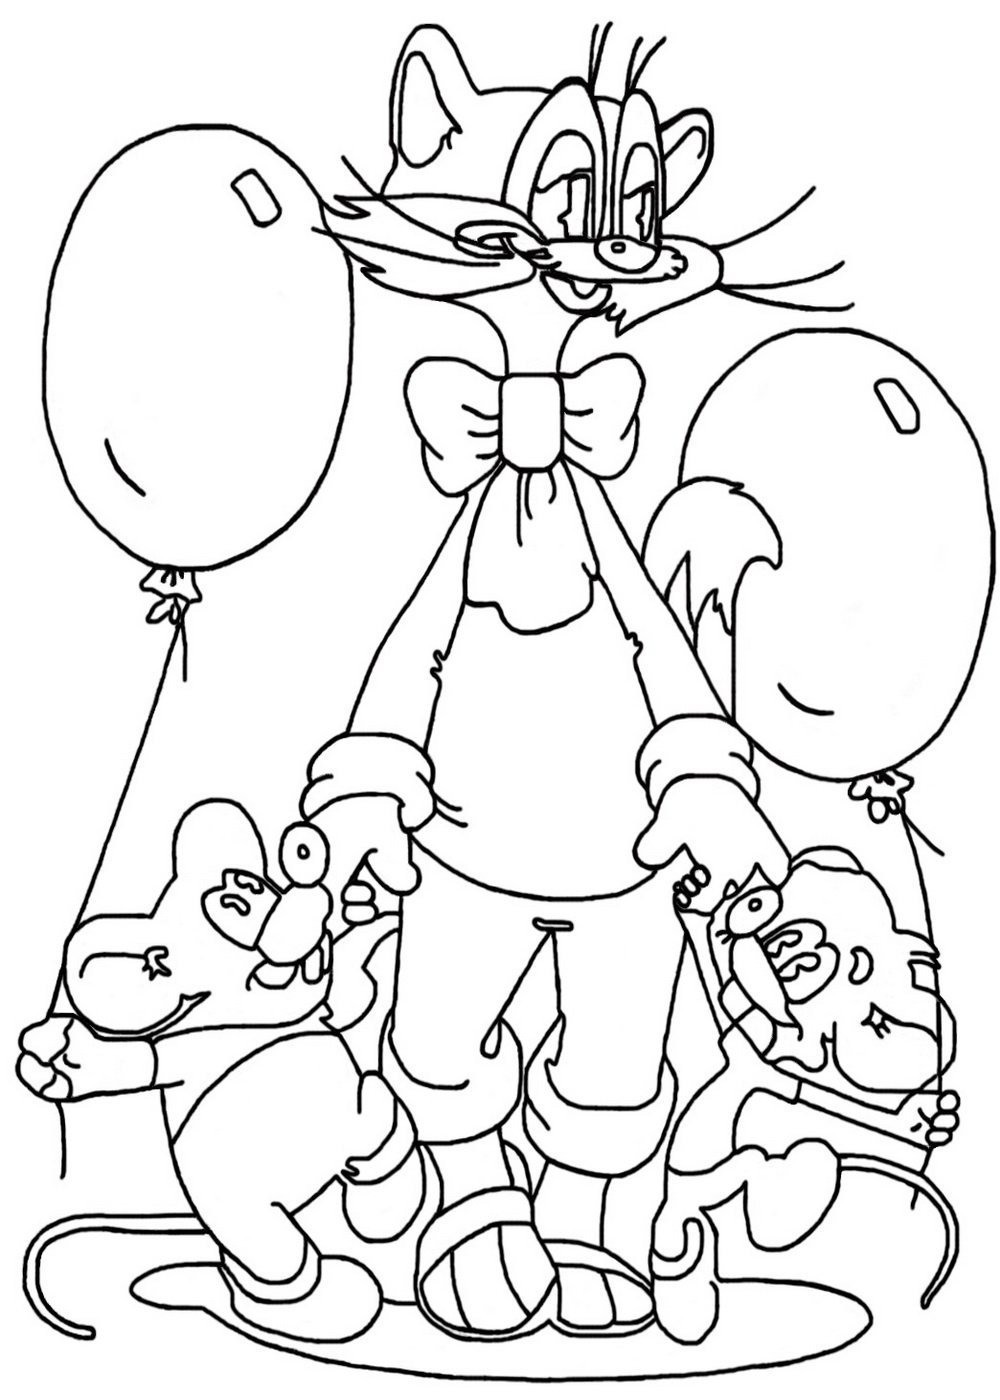 Раскраска Кот Леопольд и мыши